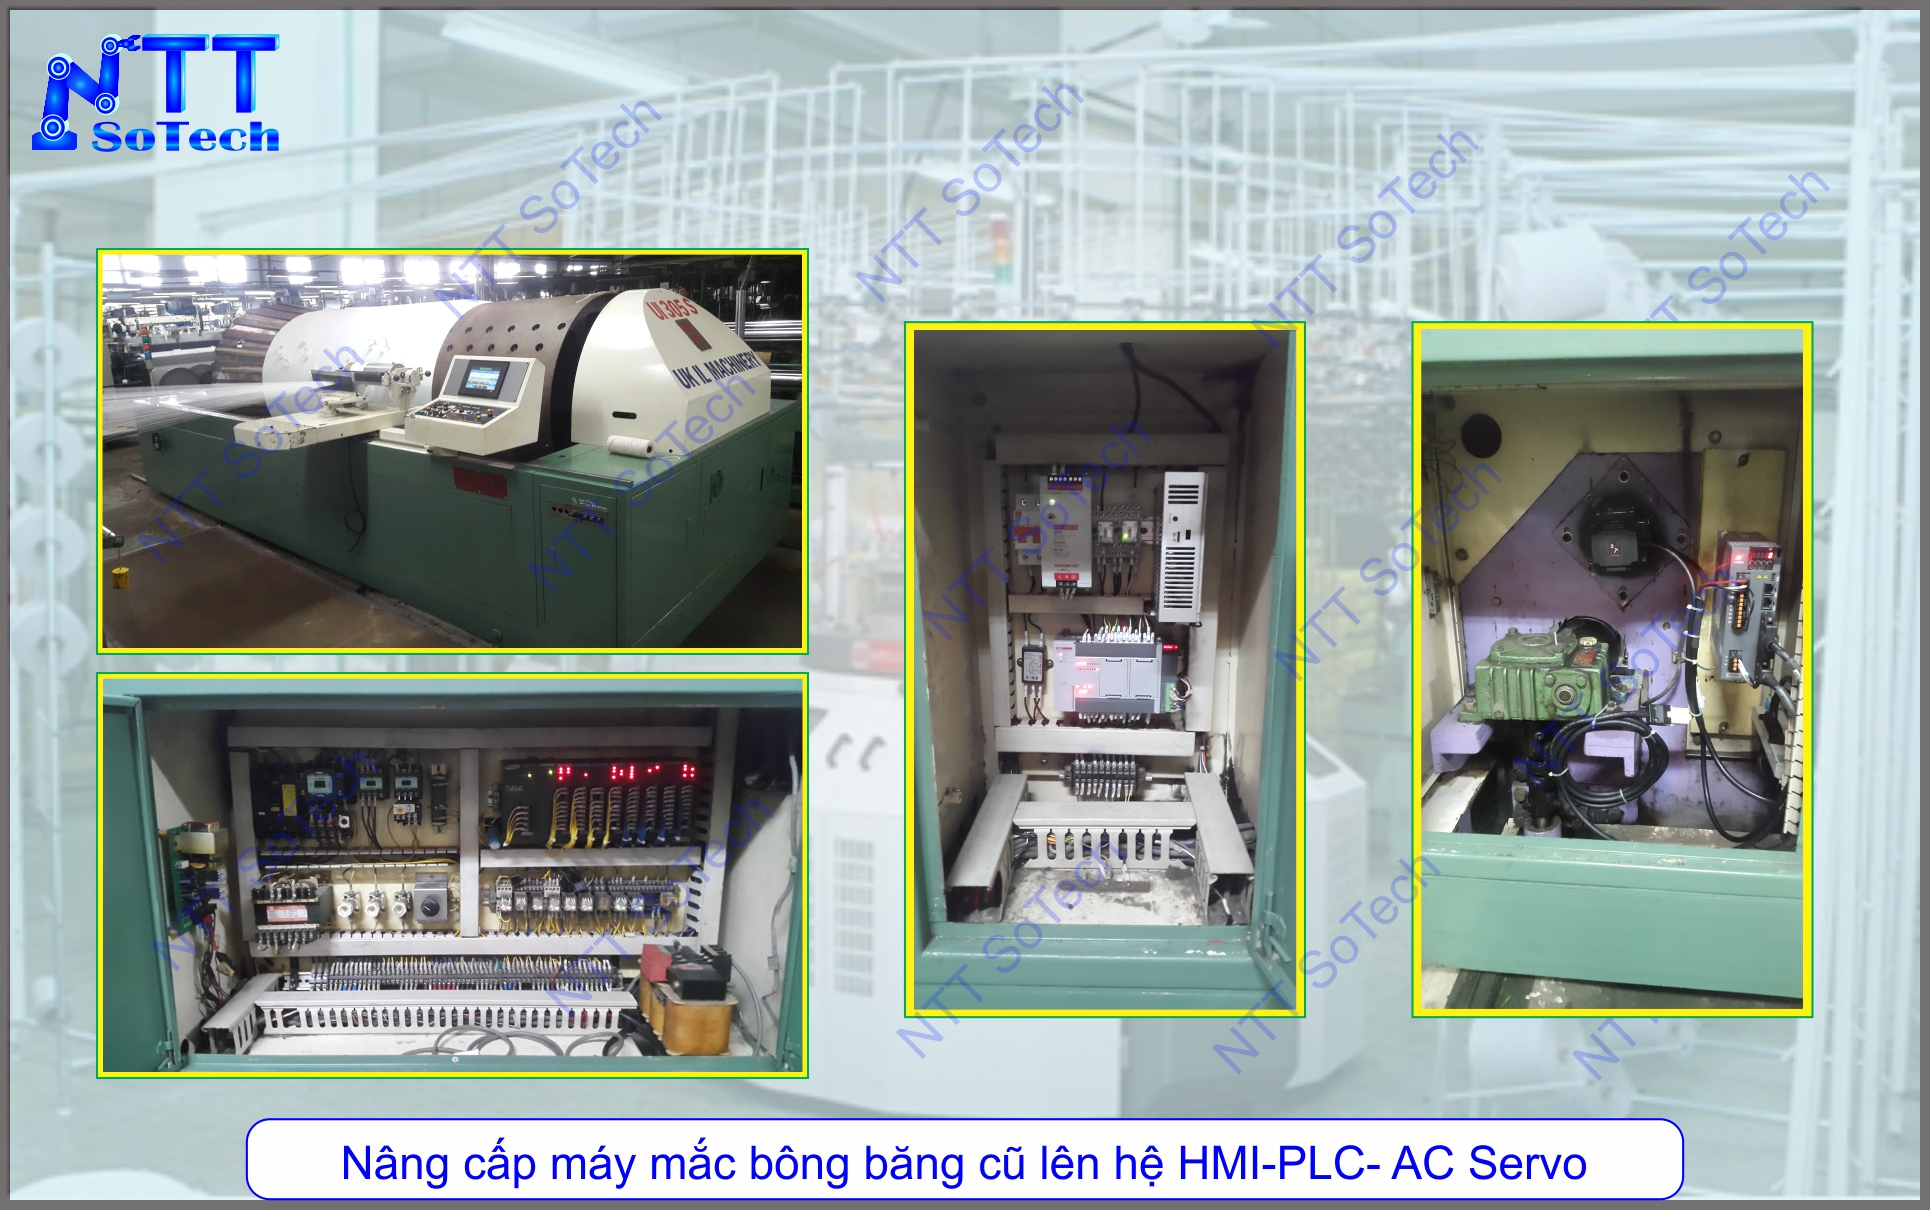 Nâng cấp máy mắc bông băng cũ lên hệ HMI-PLC-AC Servo